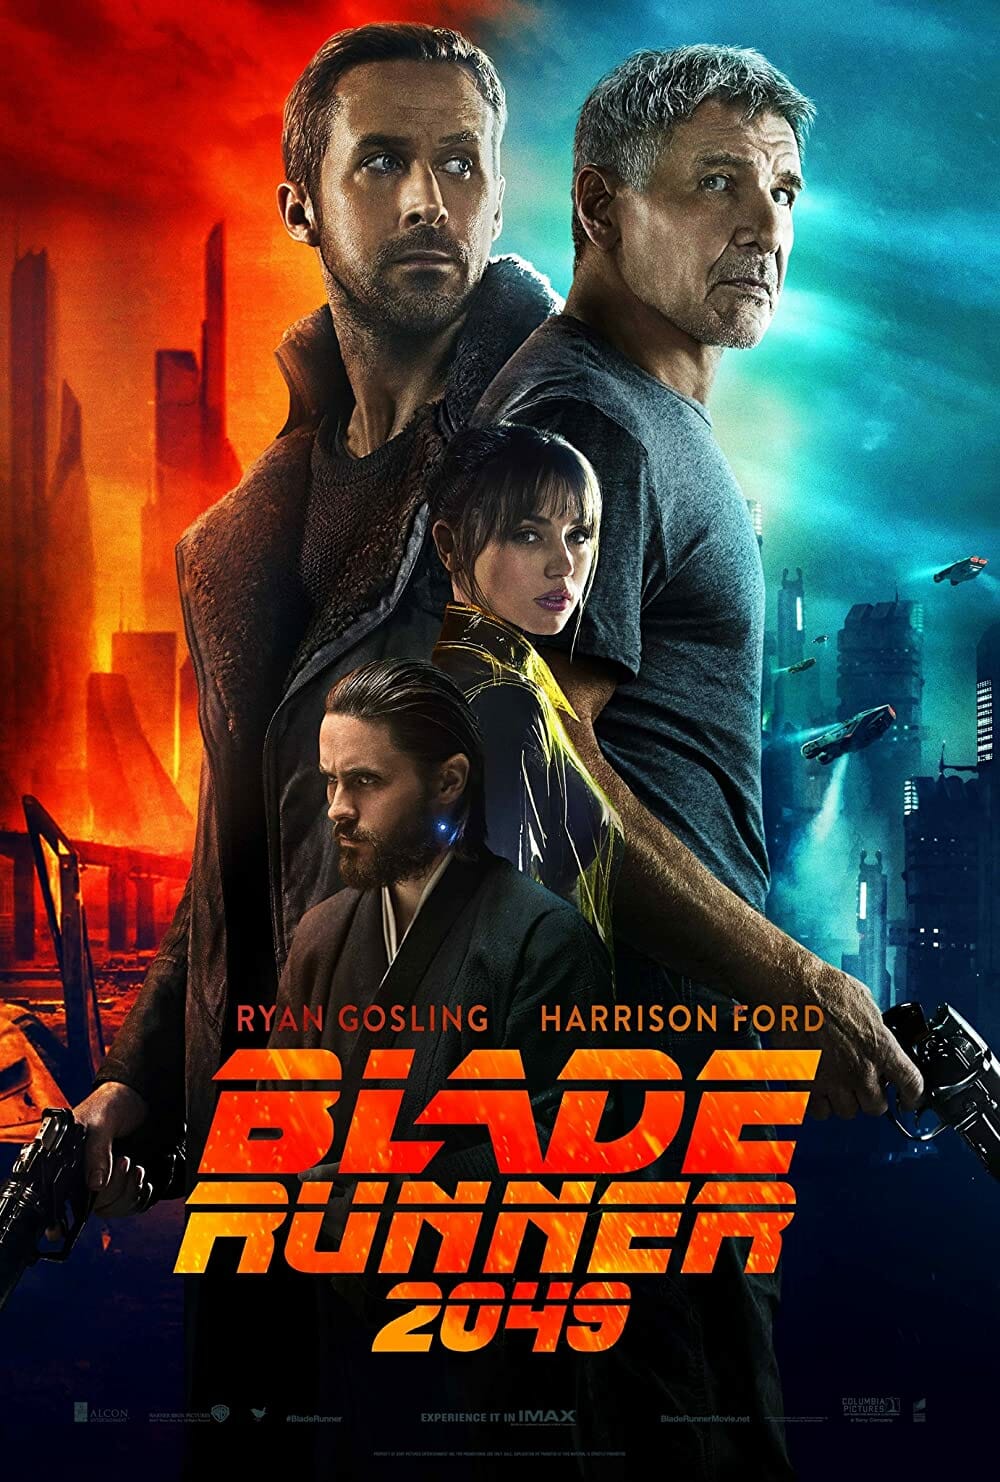 Blade Runner 2049 - Framed 31 Movie Answer